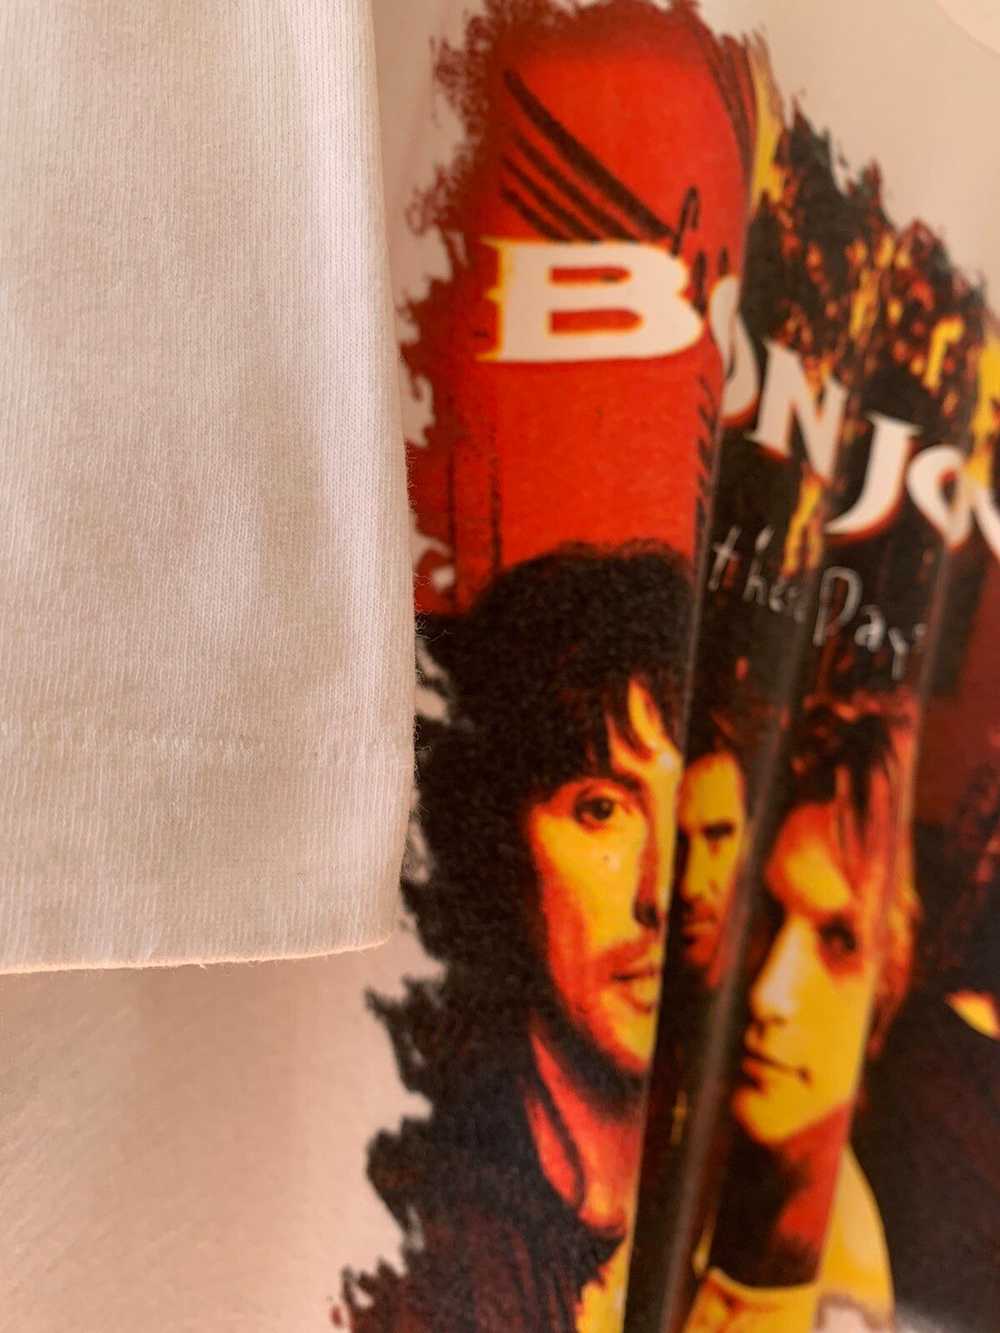 Bon Jovi © 1996 BON JOVI “These Days” T-Shirt - image 4